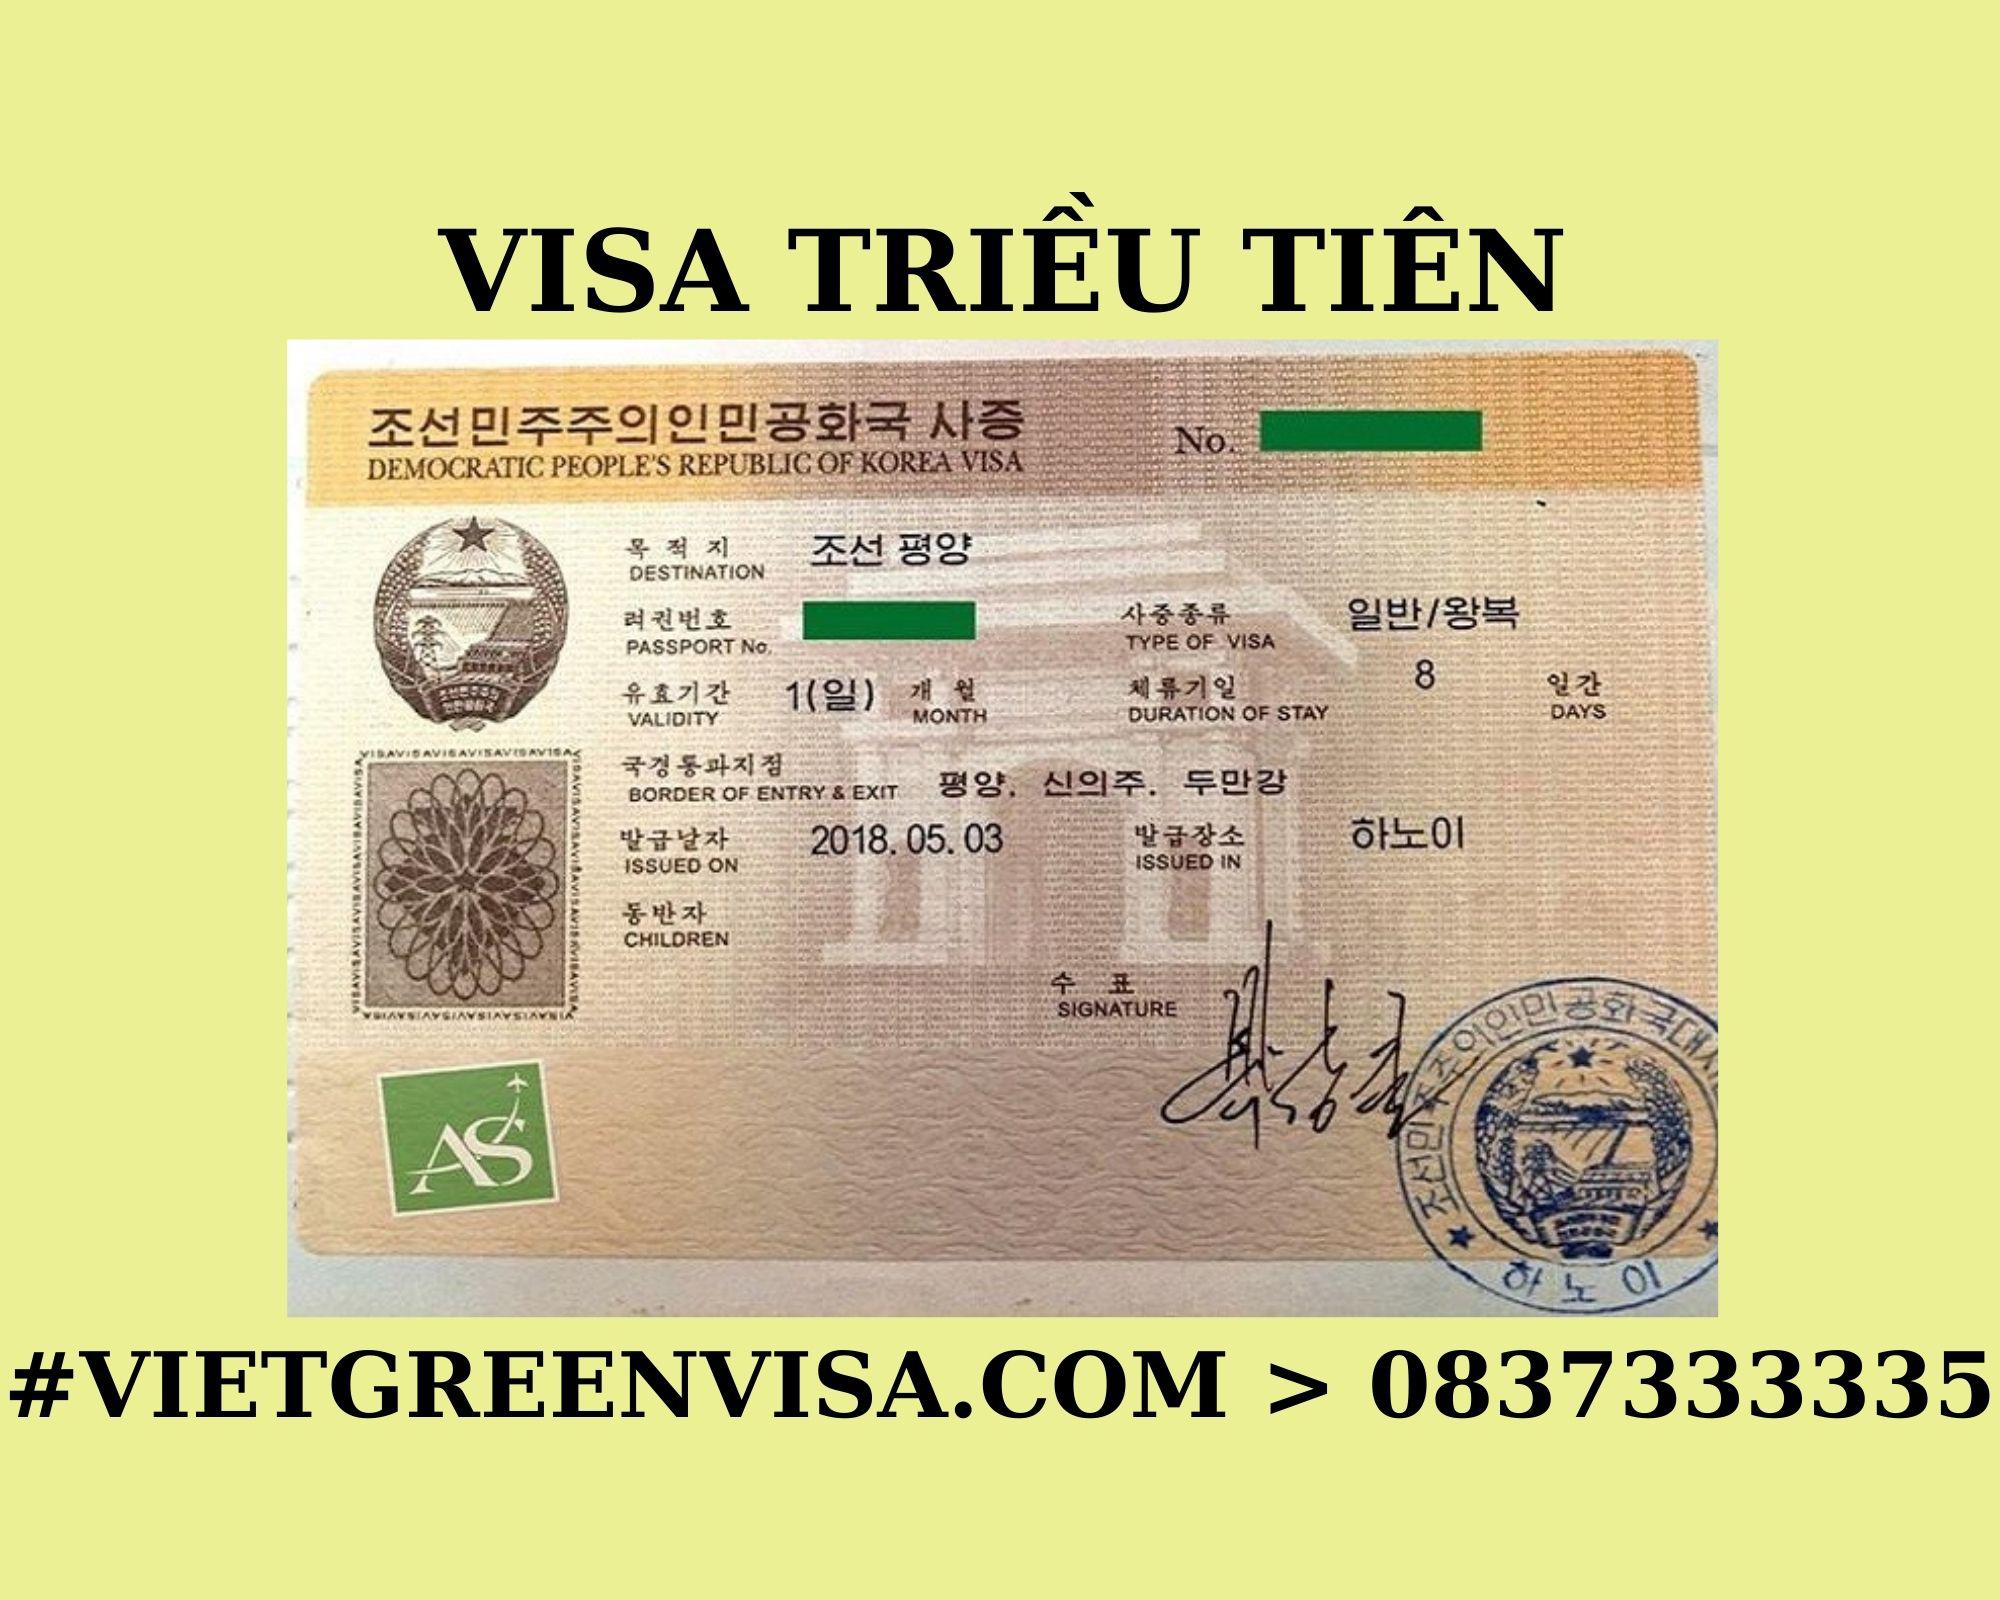 Xin Visa Triều Tiên du lịch uy tín, trọn gói